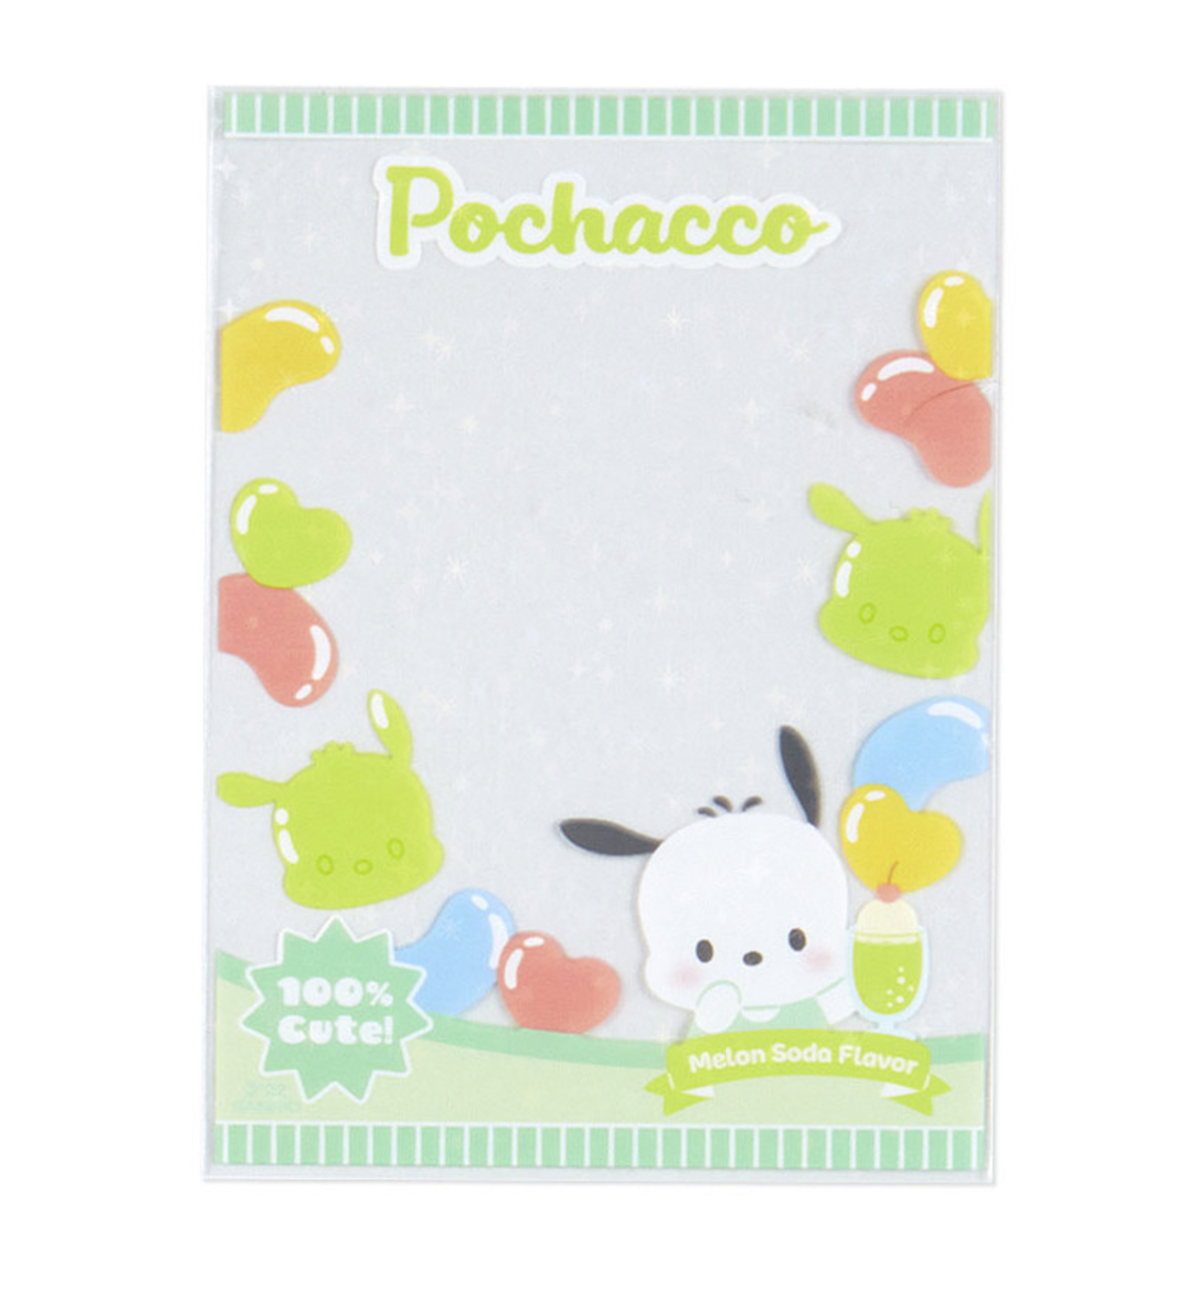 Sanrio Enjoy Idol Photocard Sleeve [9 Designs]